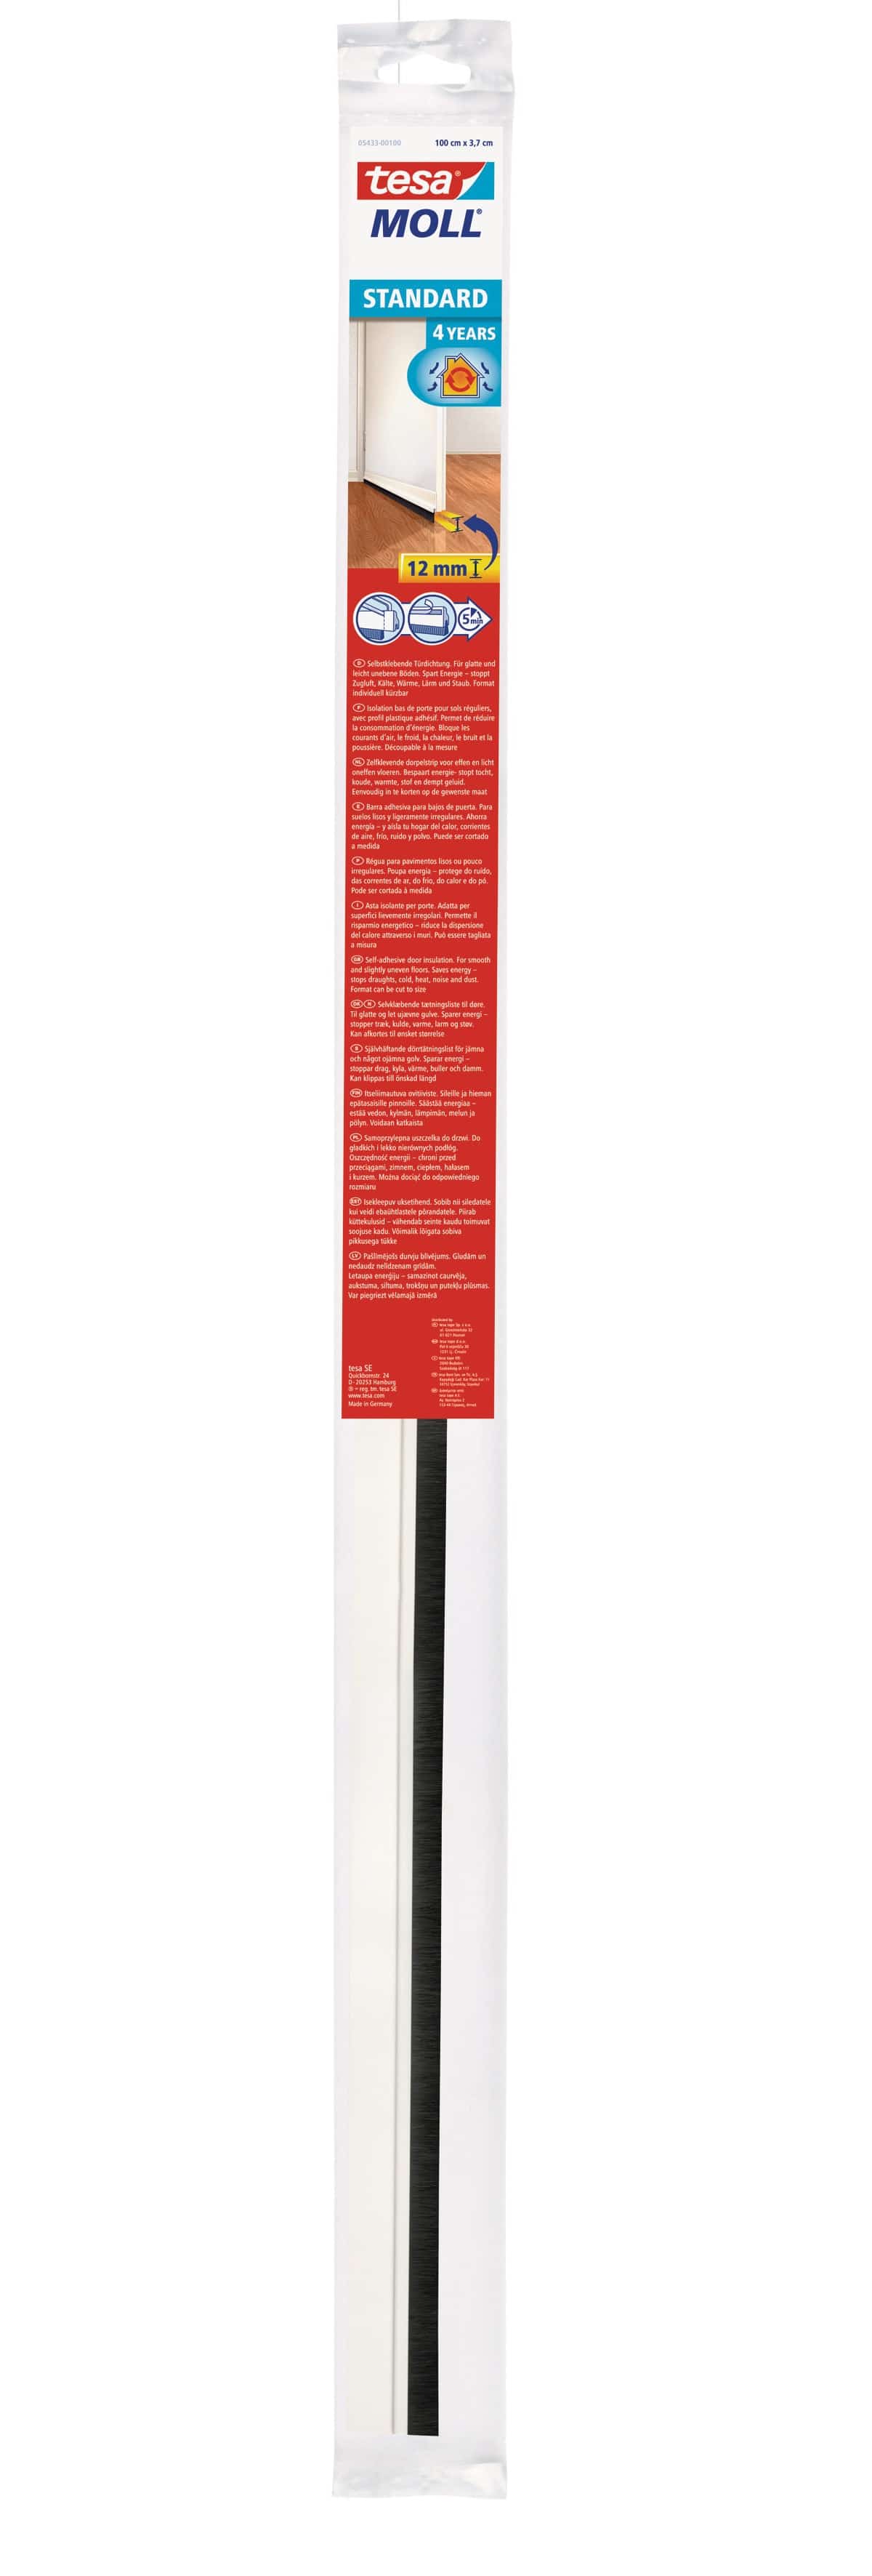 TESA tesamoll® STANDARD Türdichtschiene für glatte Böden, 37 mm x 1 m, weiß